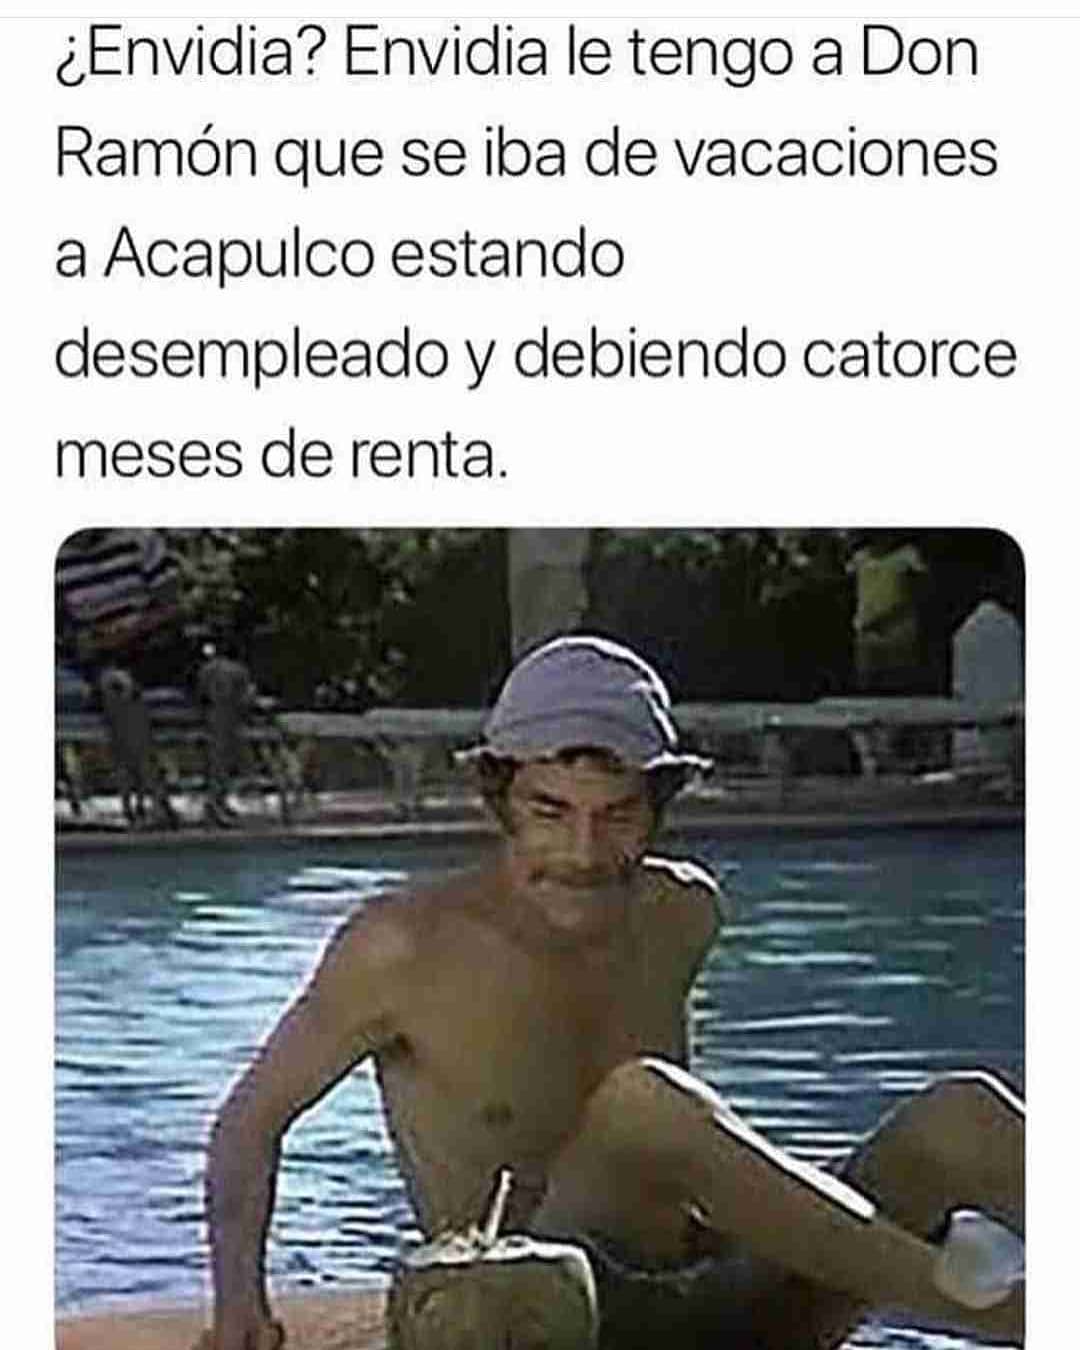 ¿Envidia? Envidia le tengo a Don Ramón que se iba de vacaciones a Acapulco estando desempleado y debiendo catorce meses de renta.